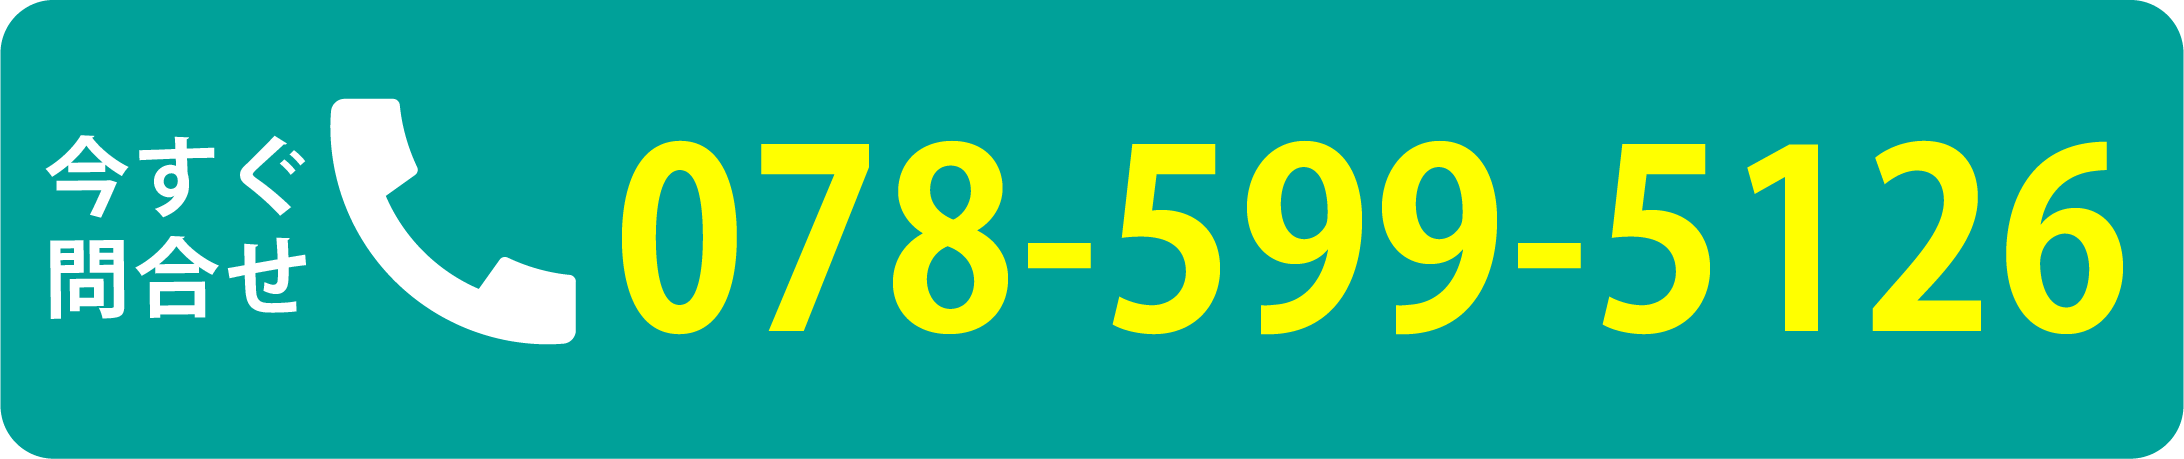 078-599-5126